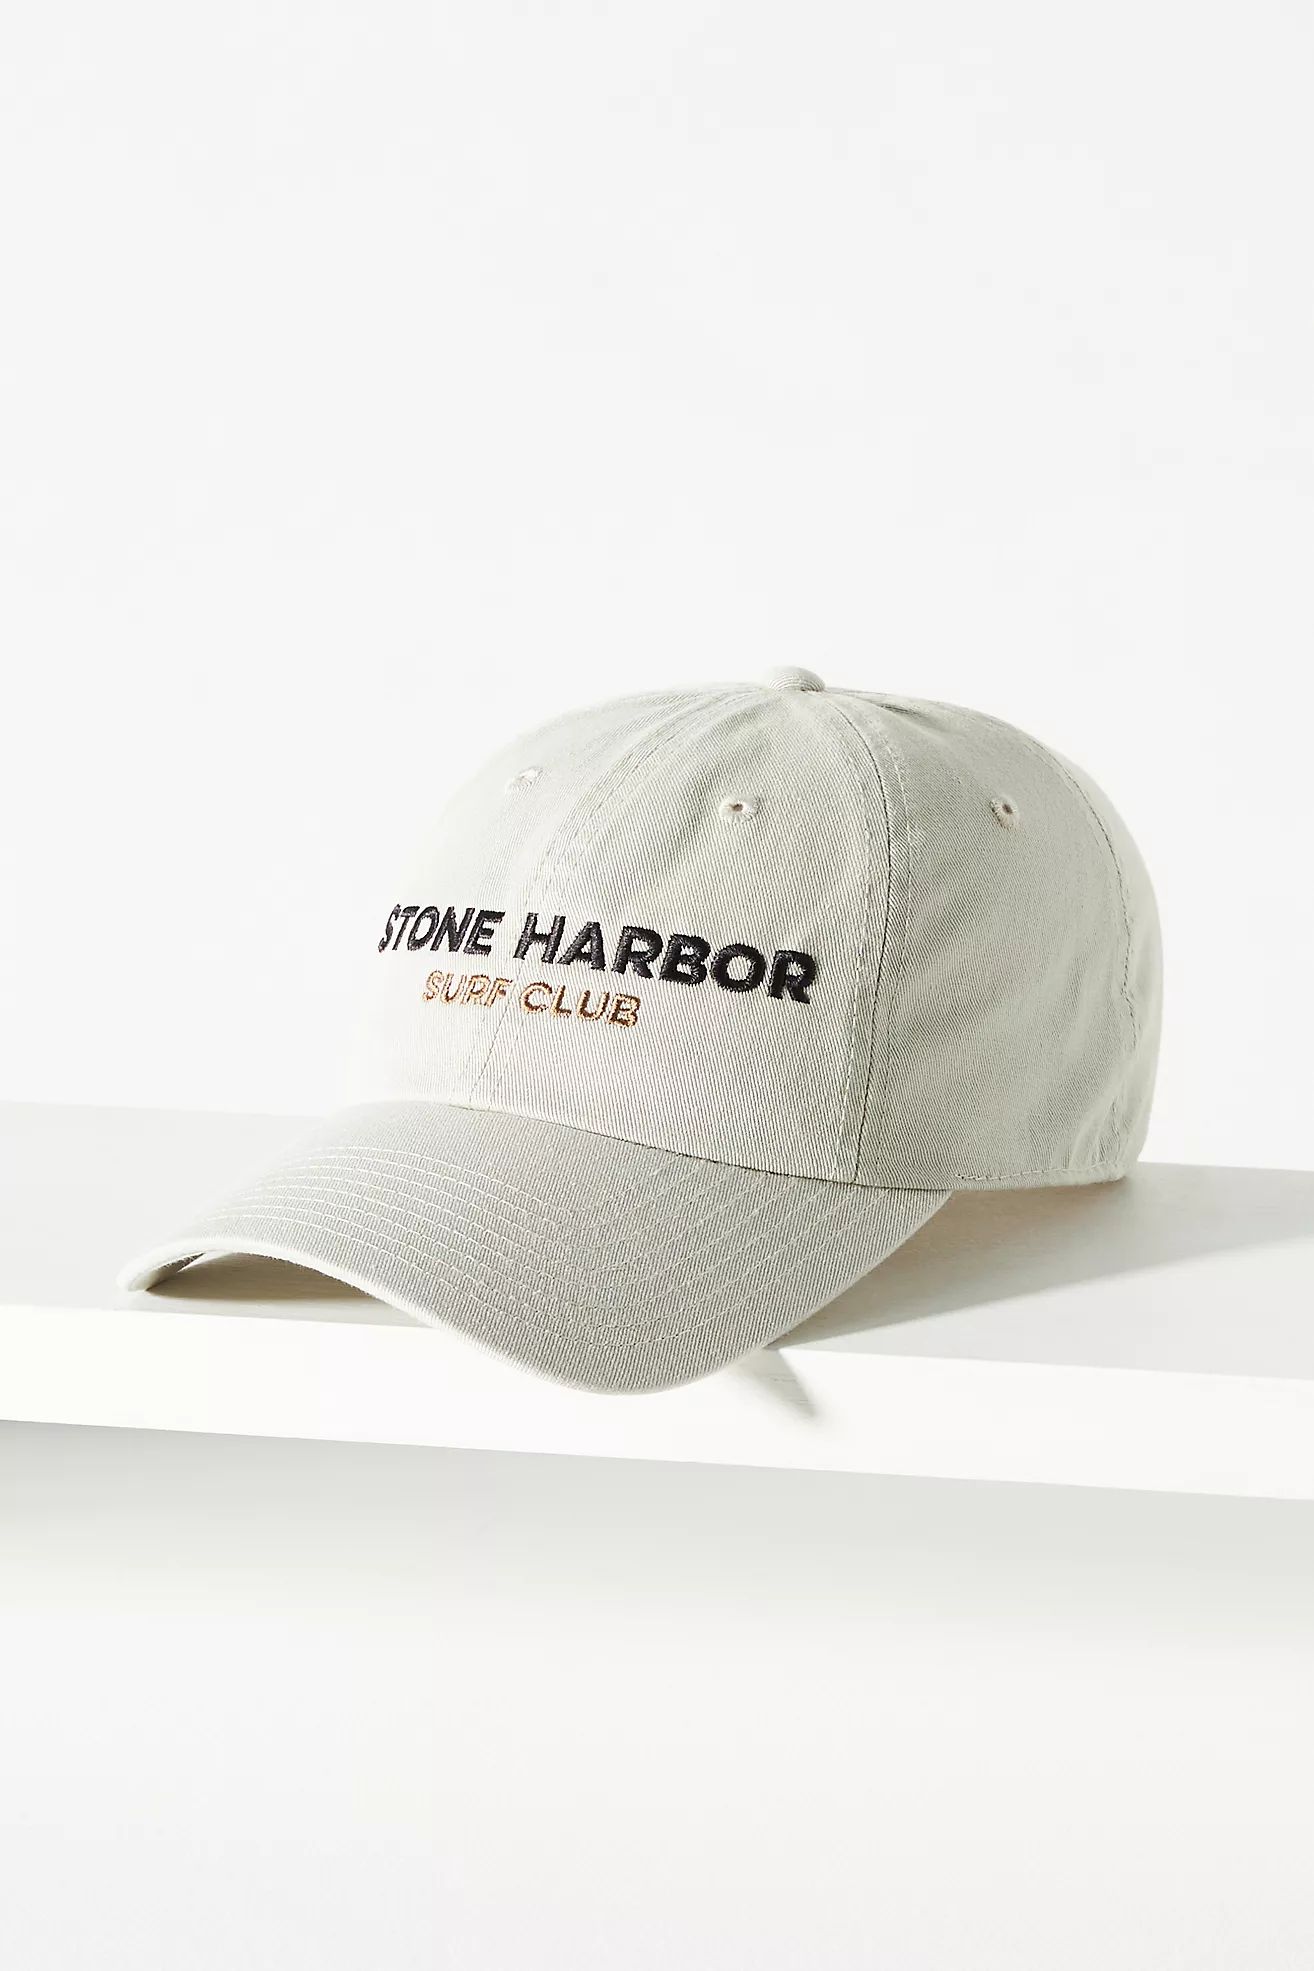 American Needle Stone Harbor Cap | Anthropologie (US)